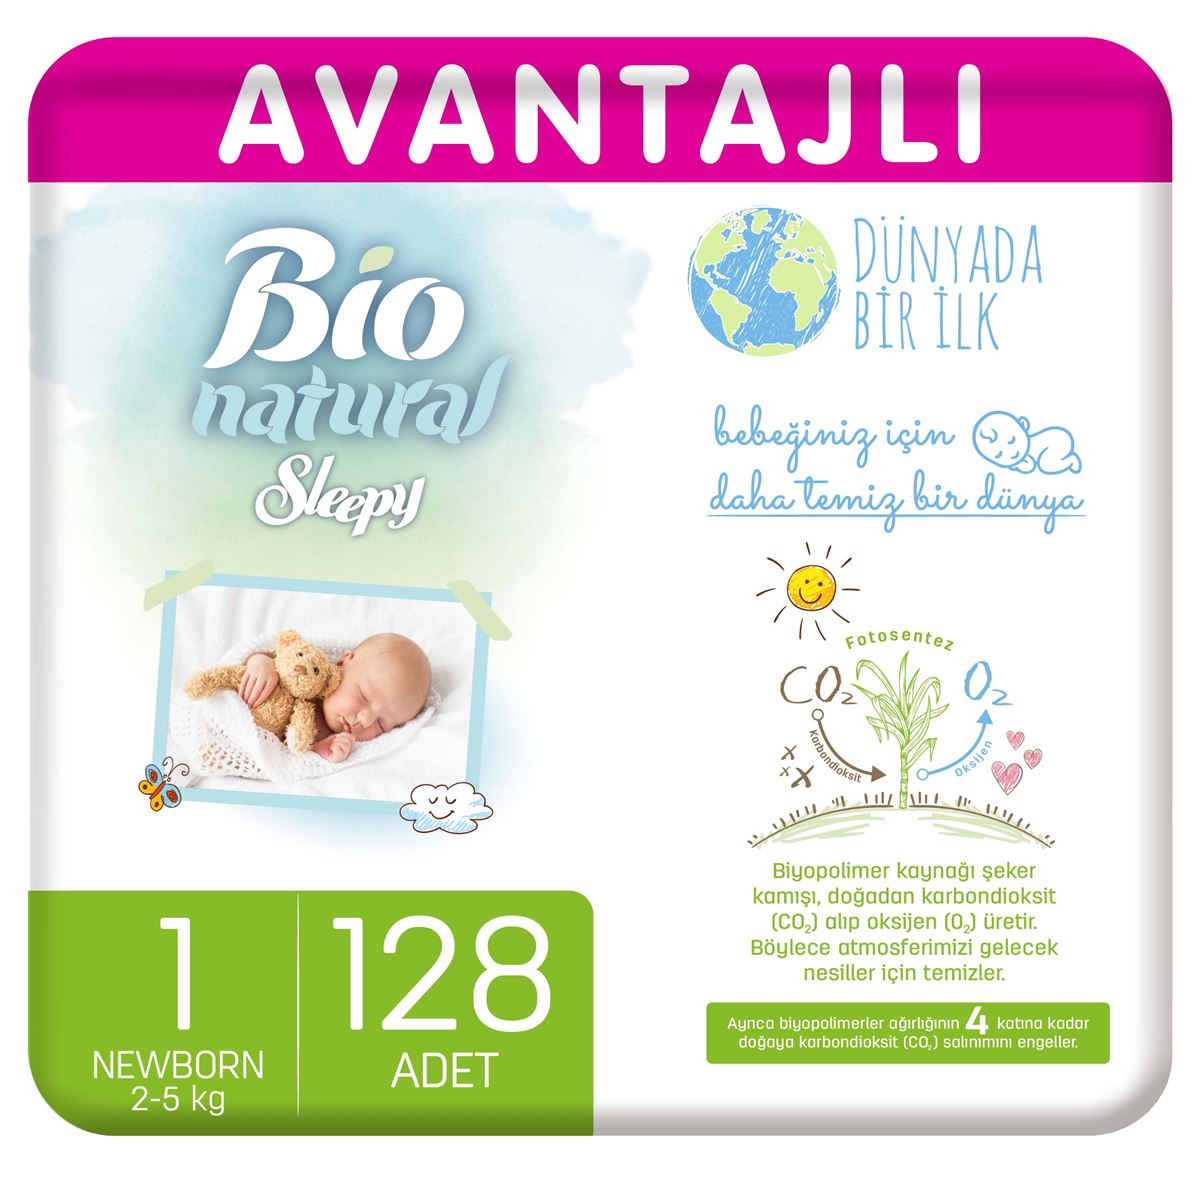 Sleepy Bio Natural Avantajlı Bebek Bezi 1 Numara Yenidoğan 128 Adet